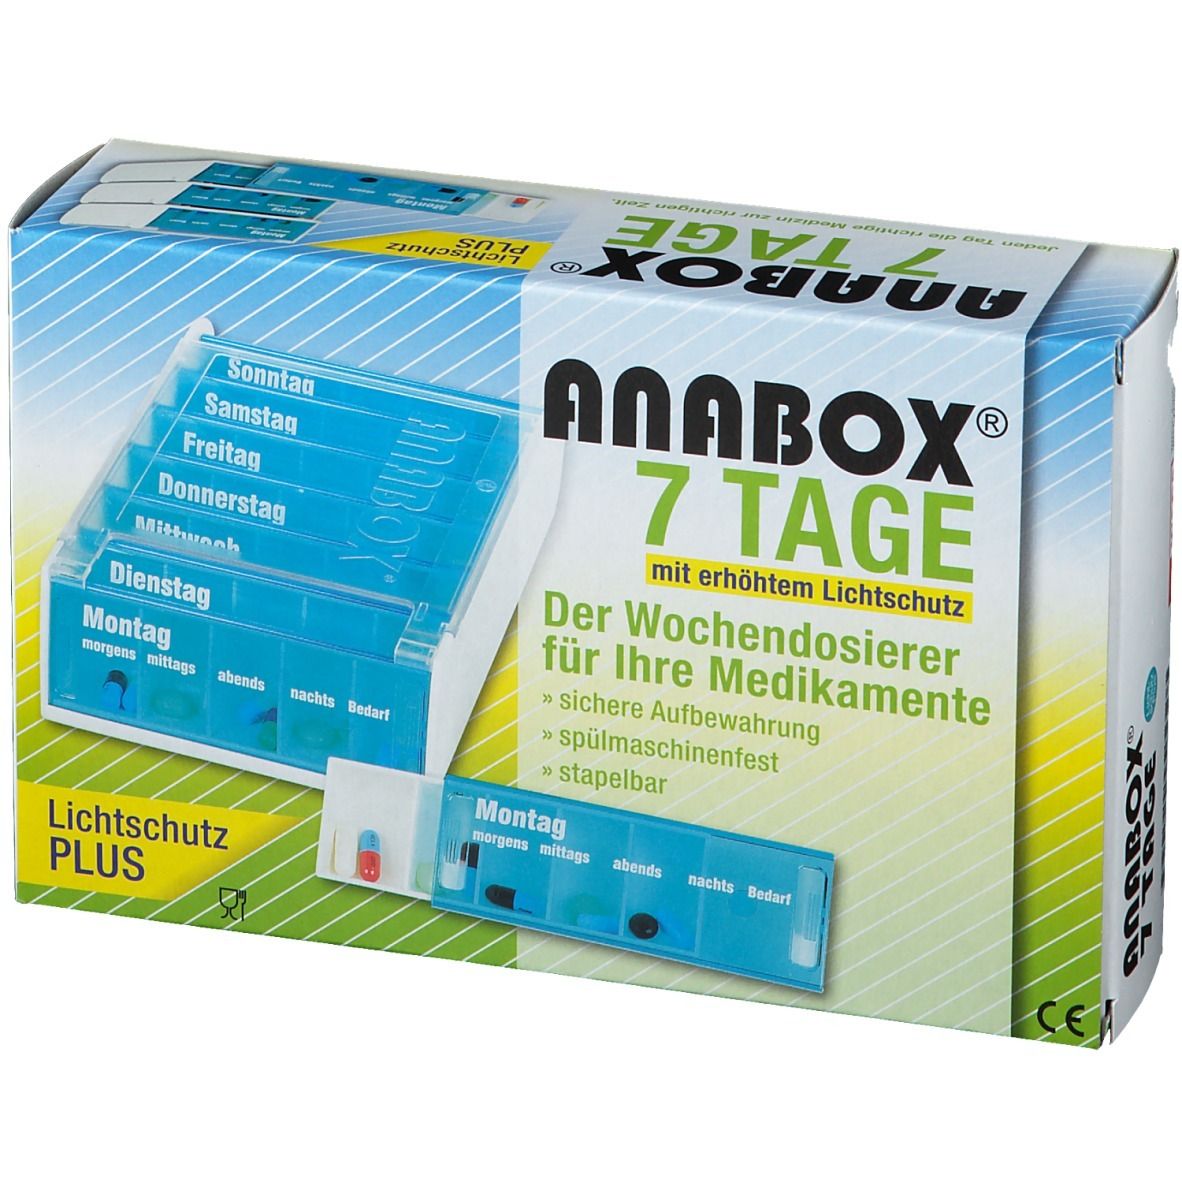 WEPA Anabox® 7 Tage Lichtschutz